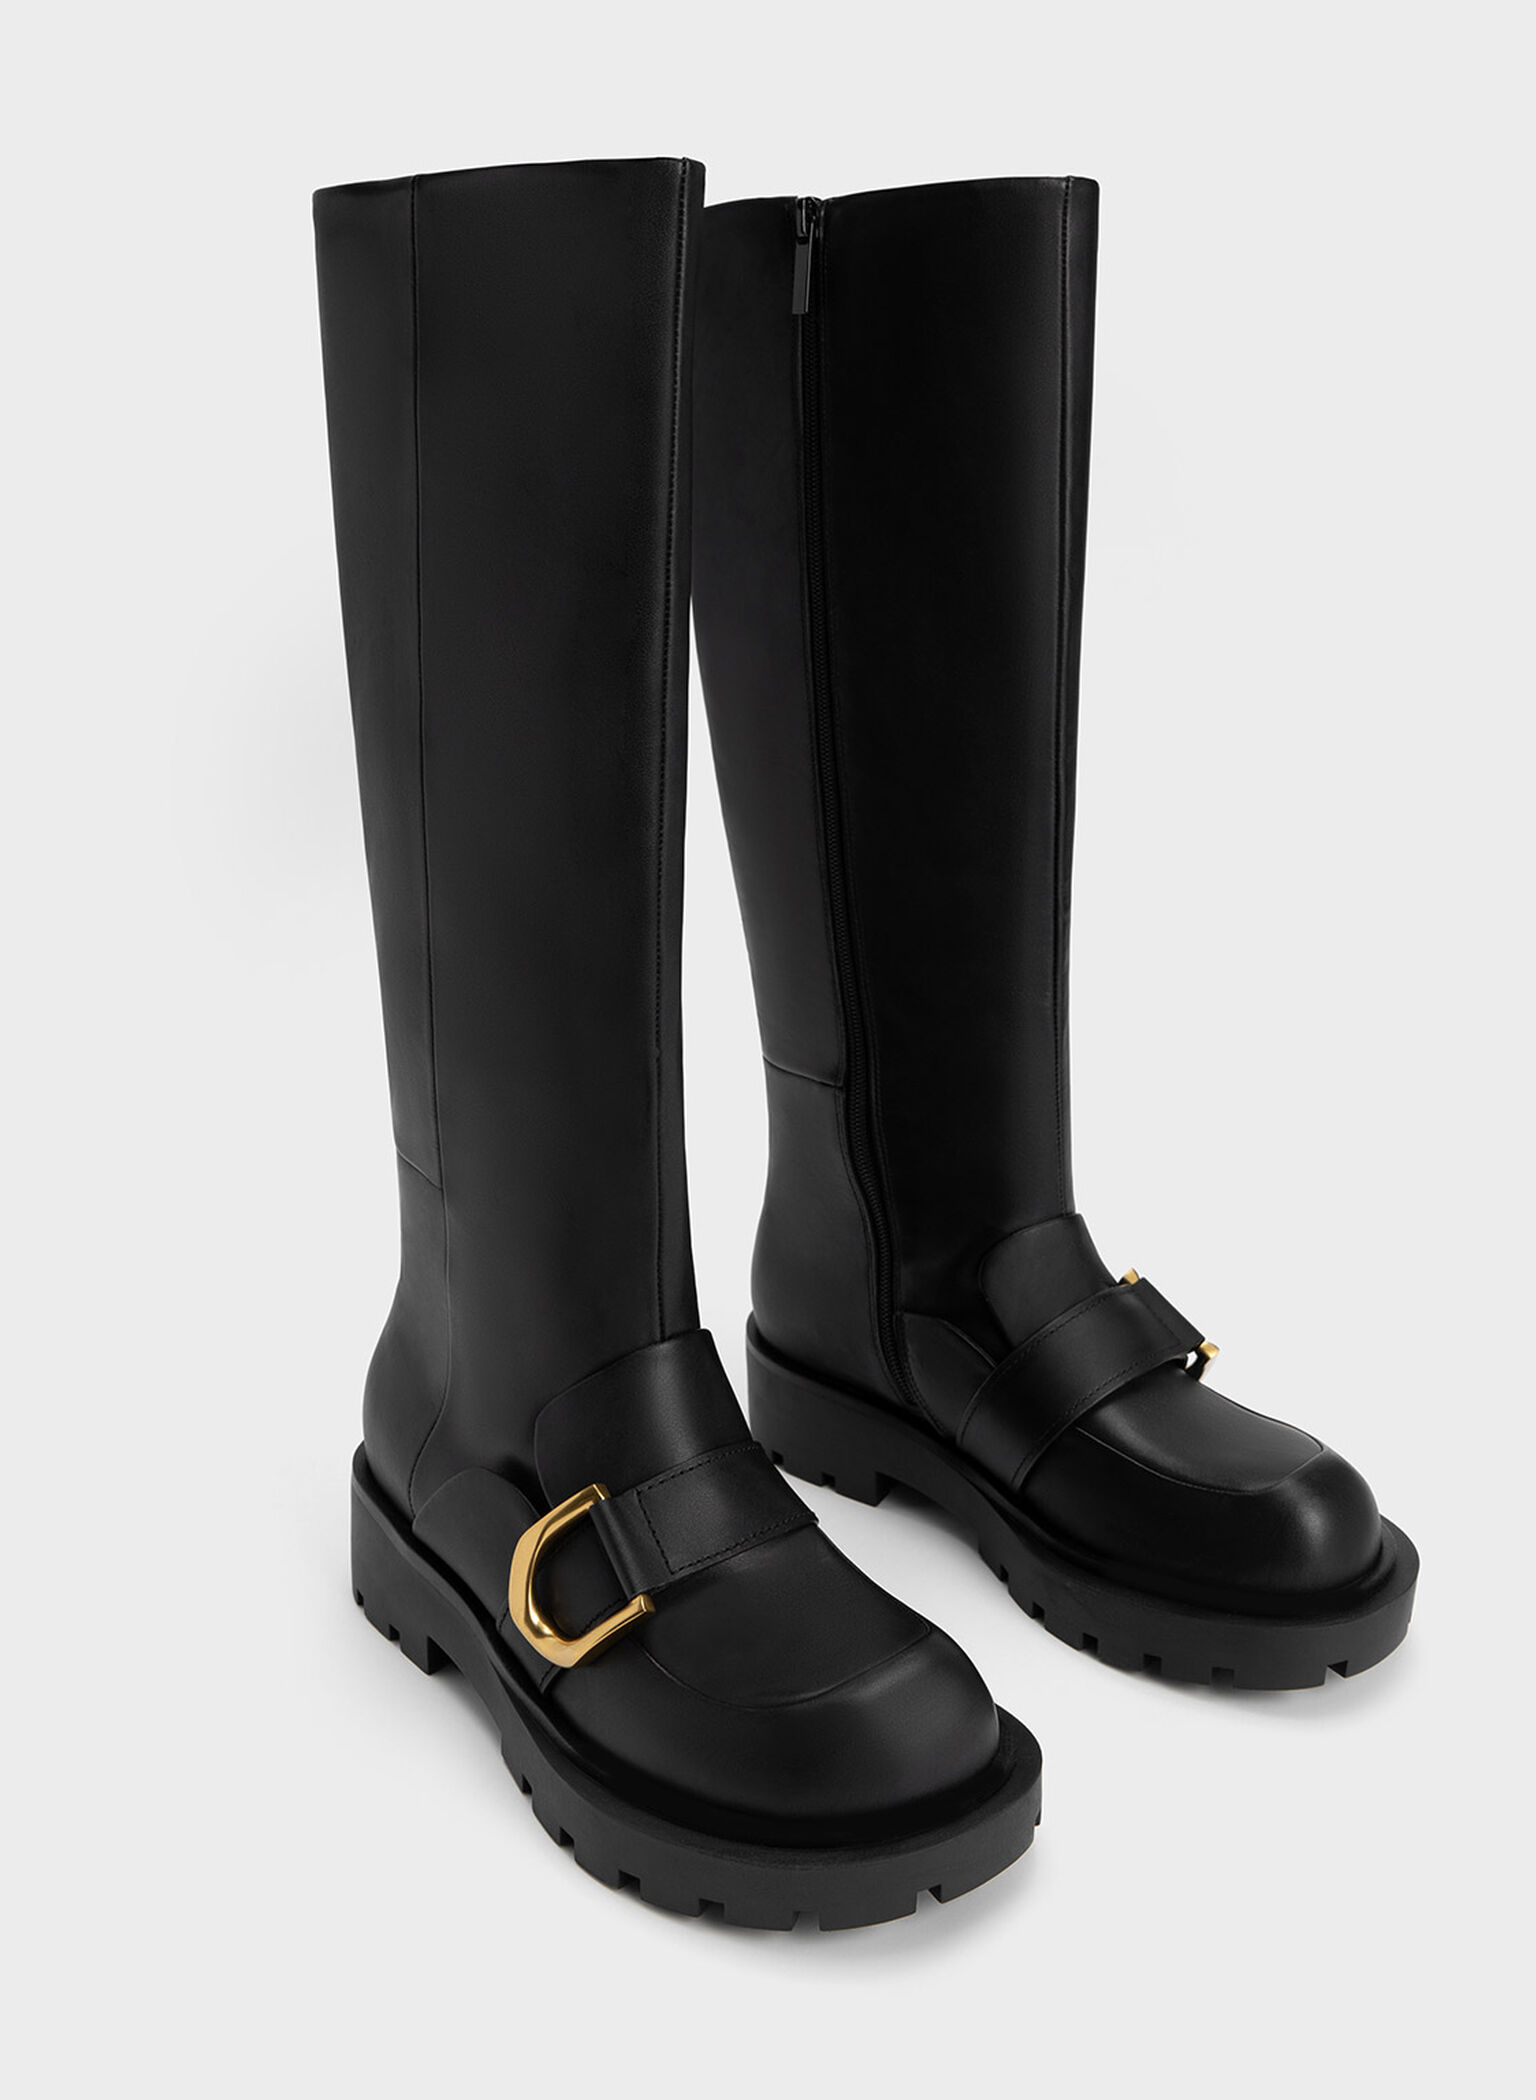 Gabine Loafer Knee-High Boots, Black, hi-res